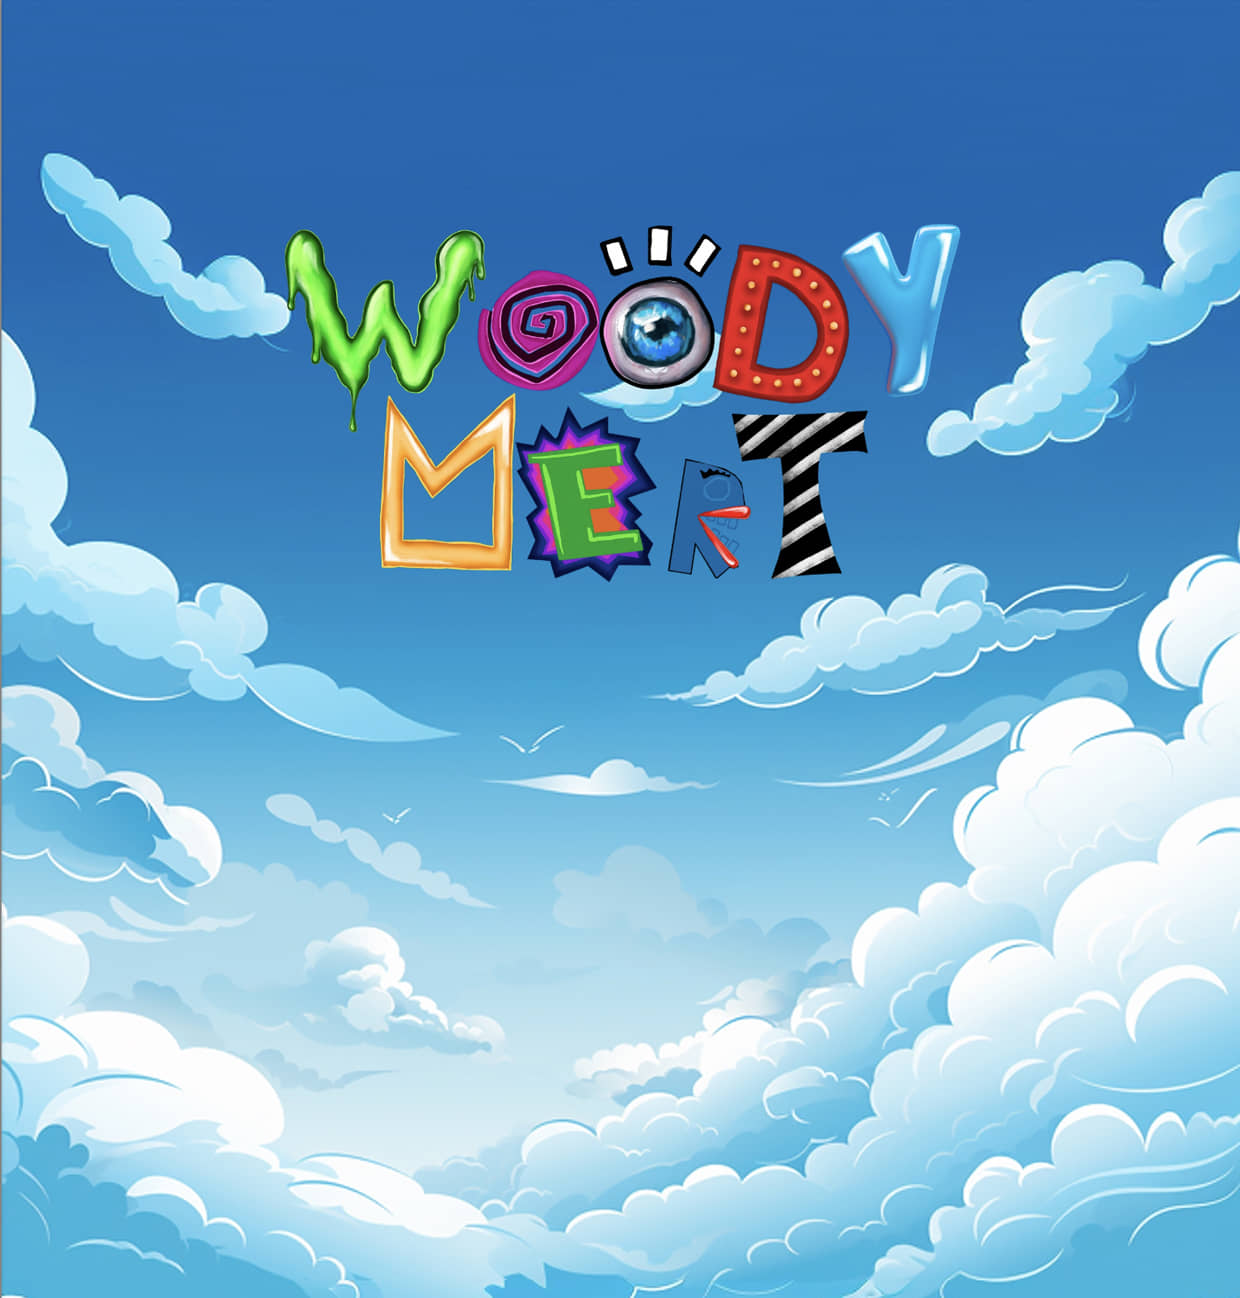 Woody Mert